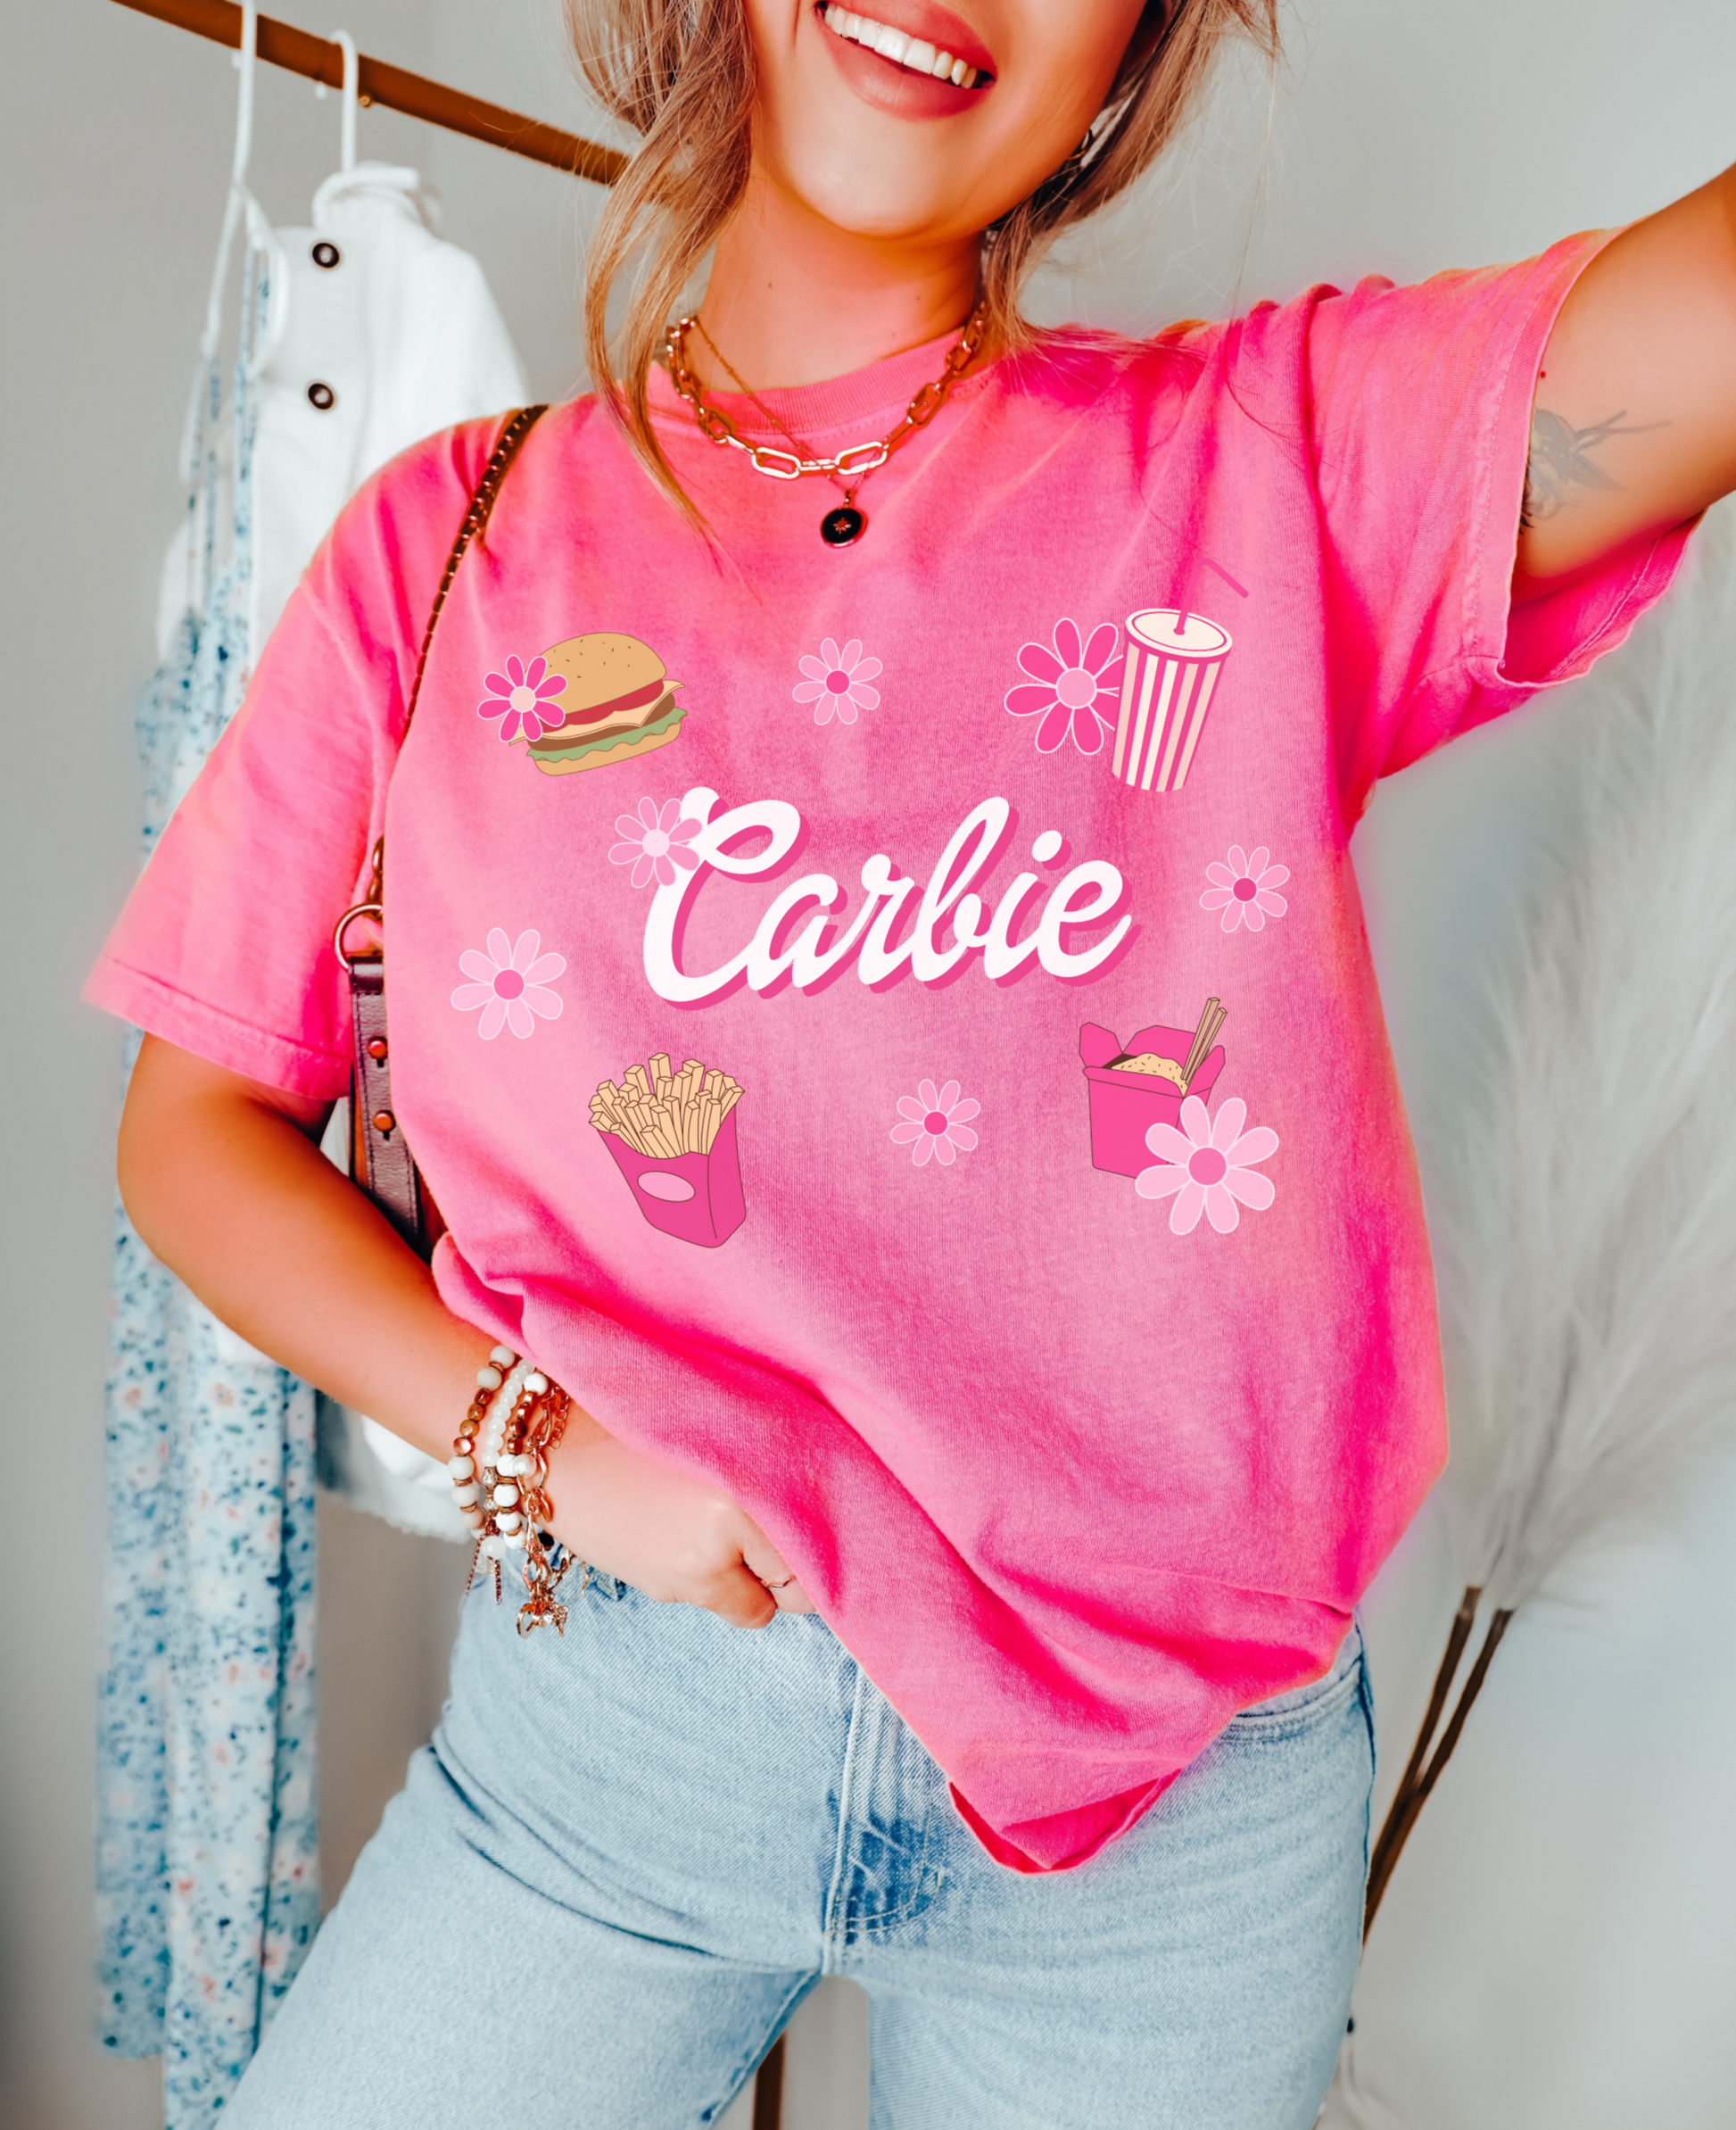 Carbie pink shirt